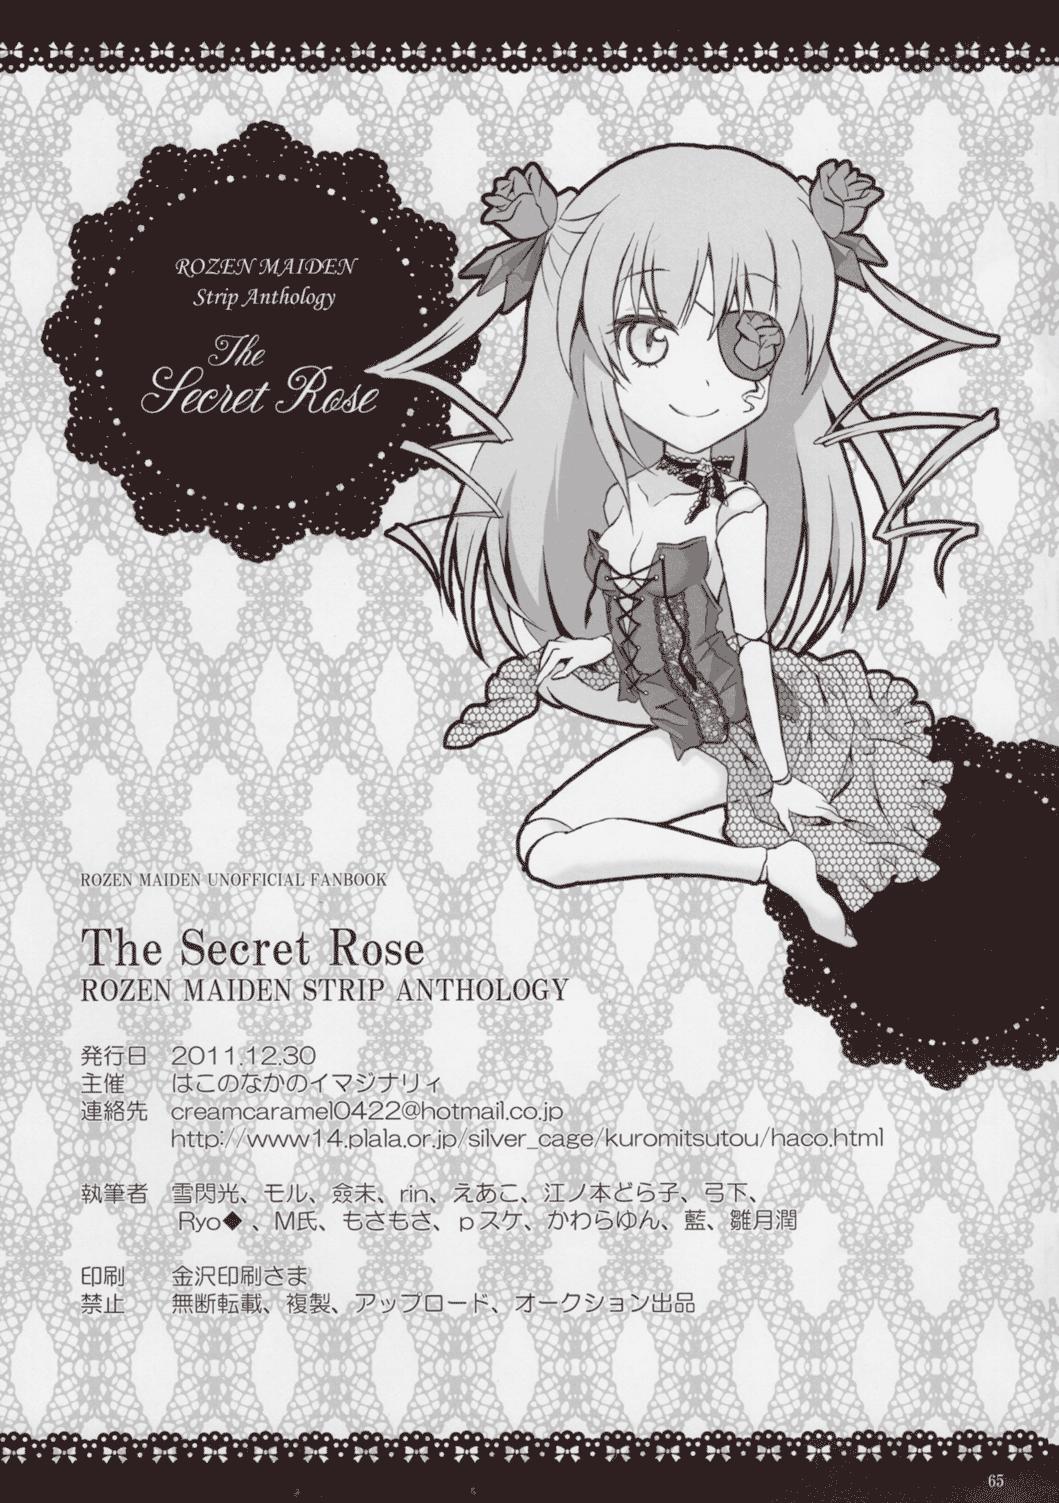 Rozen Maiden Strip Gallery "The Secret Rose" 63